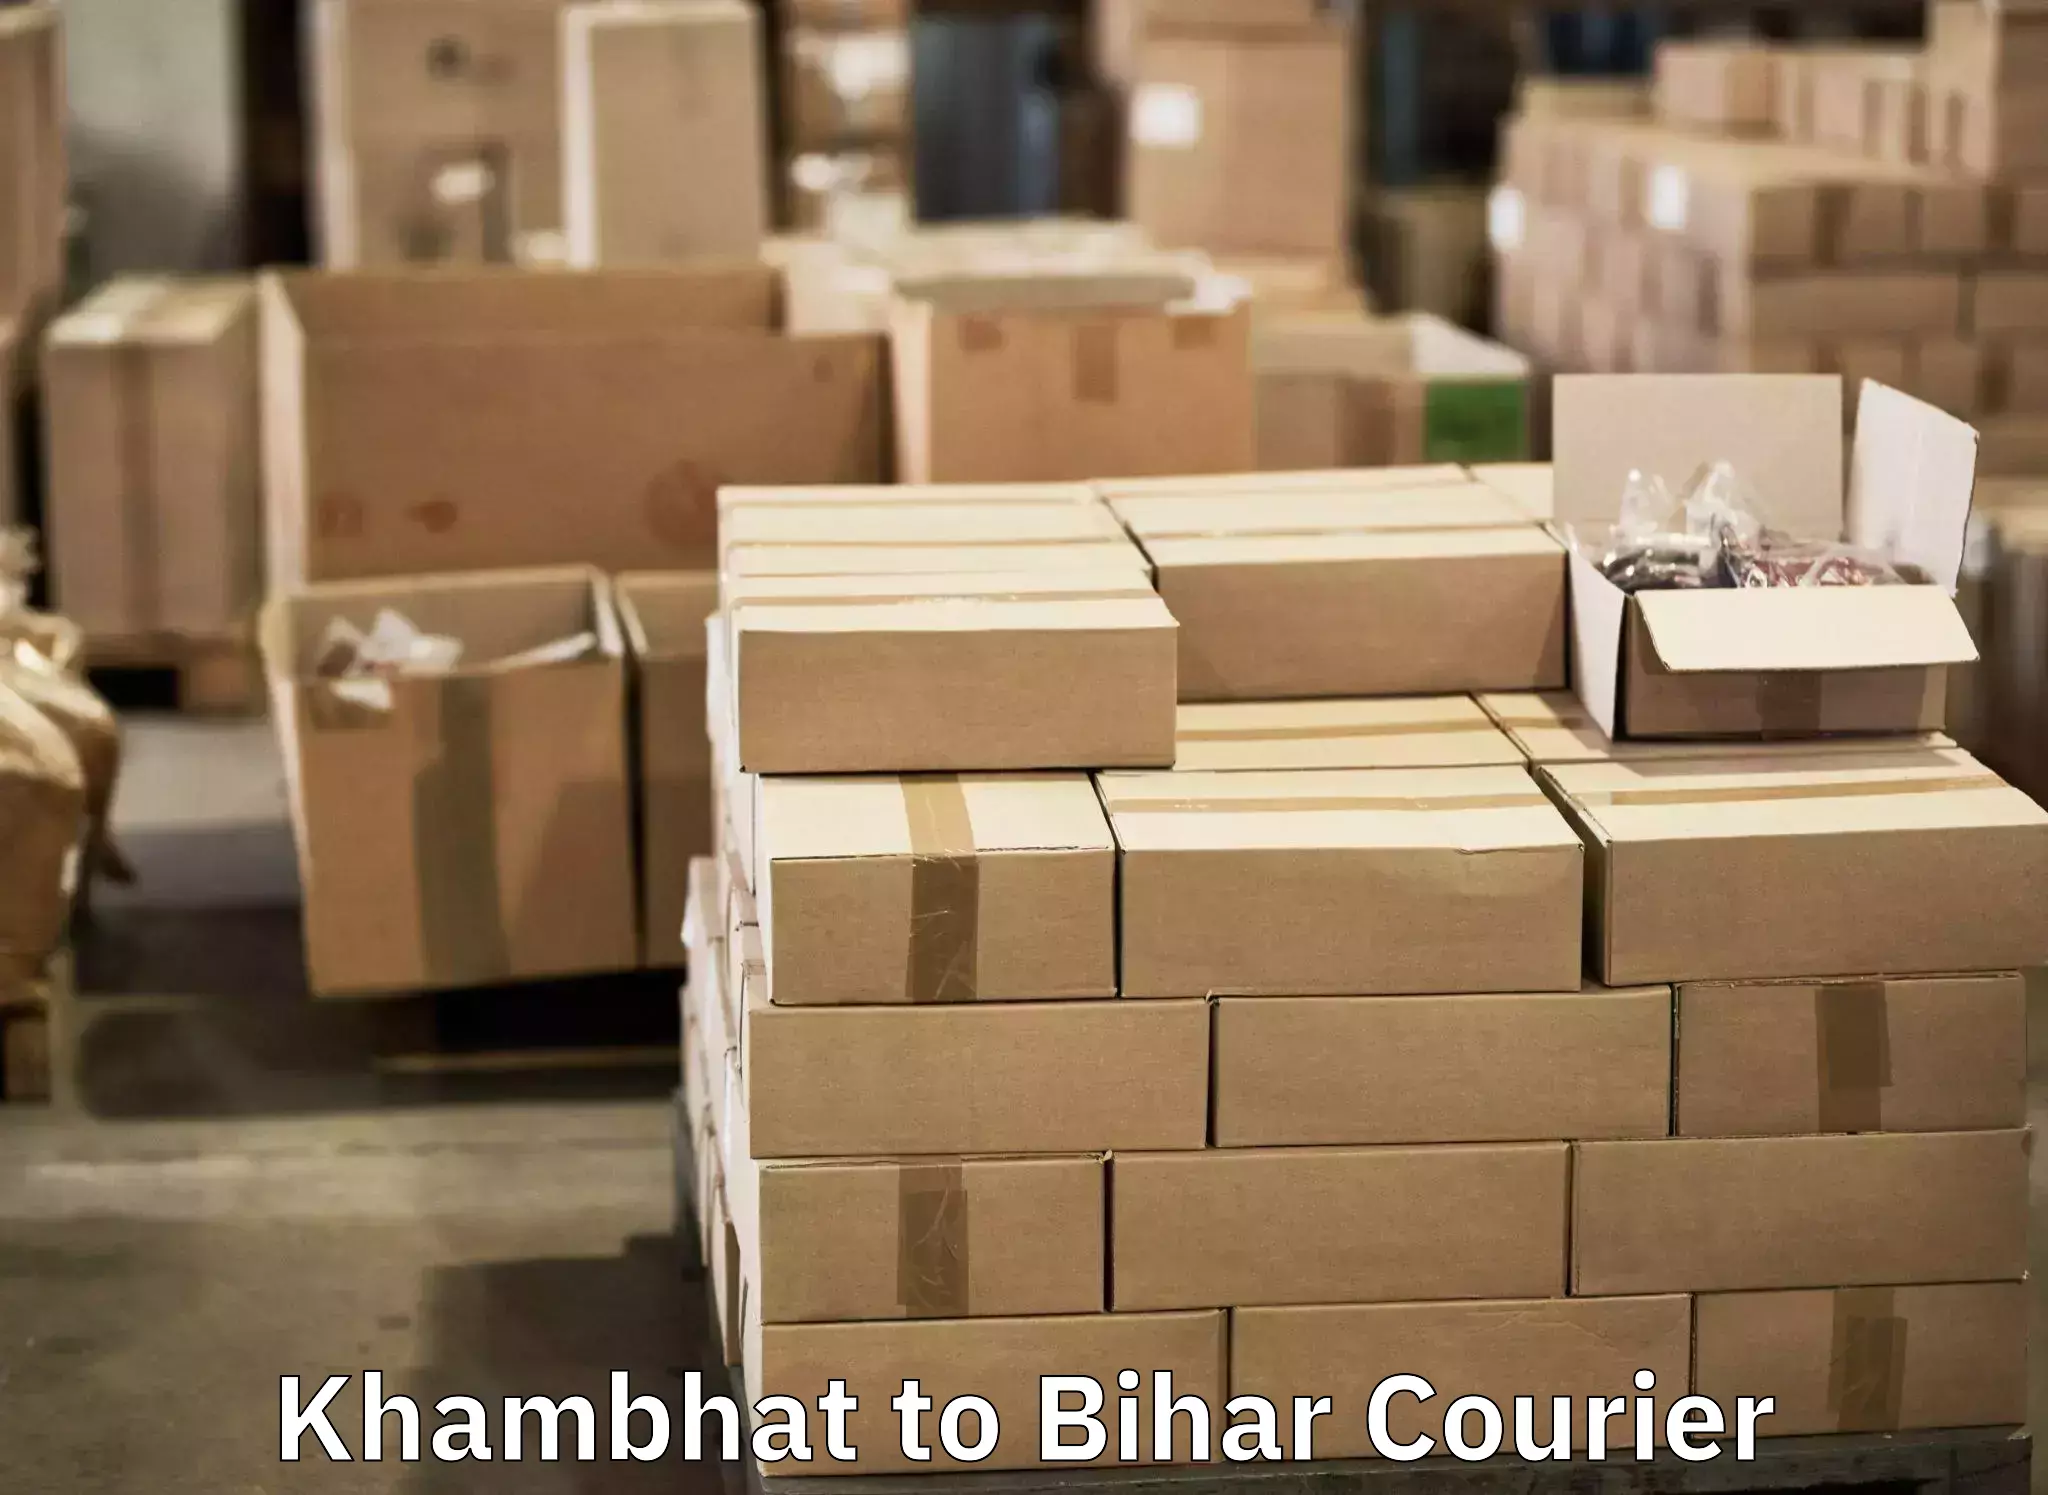 Luggage delivery estimate Khambhat to Kharagpur Munger